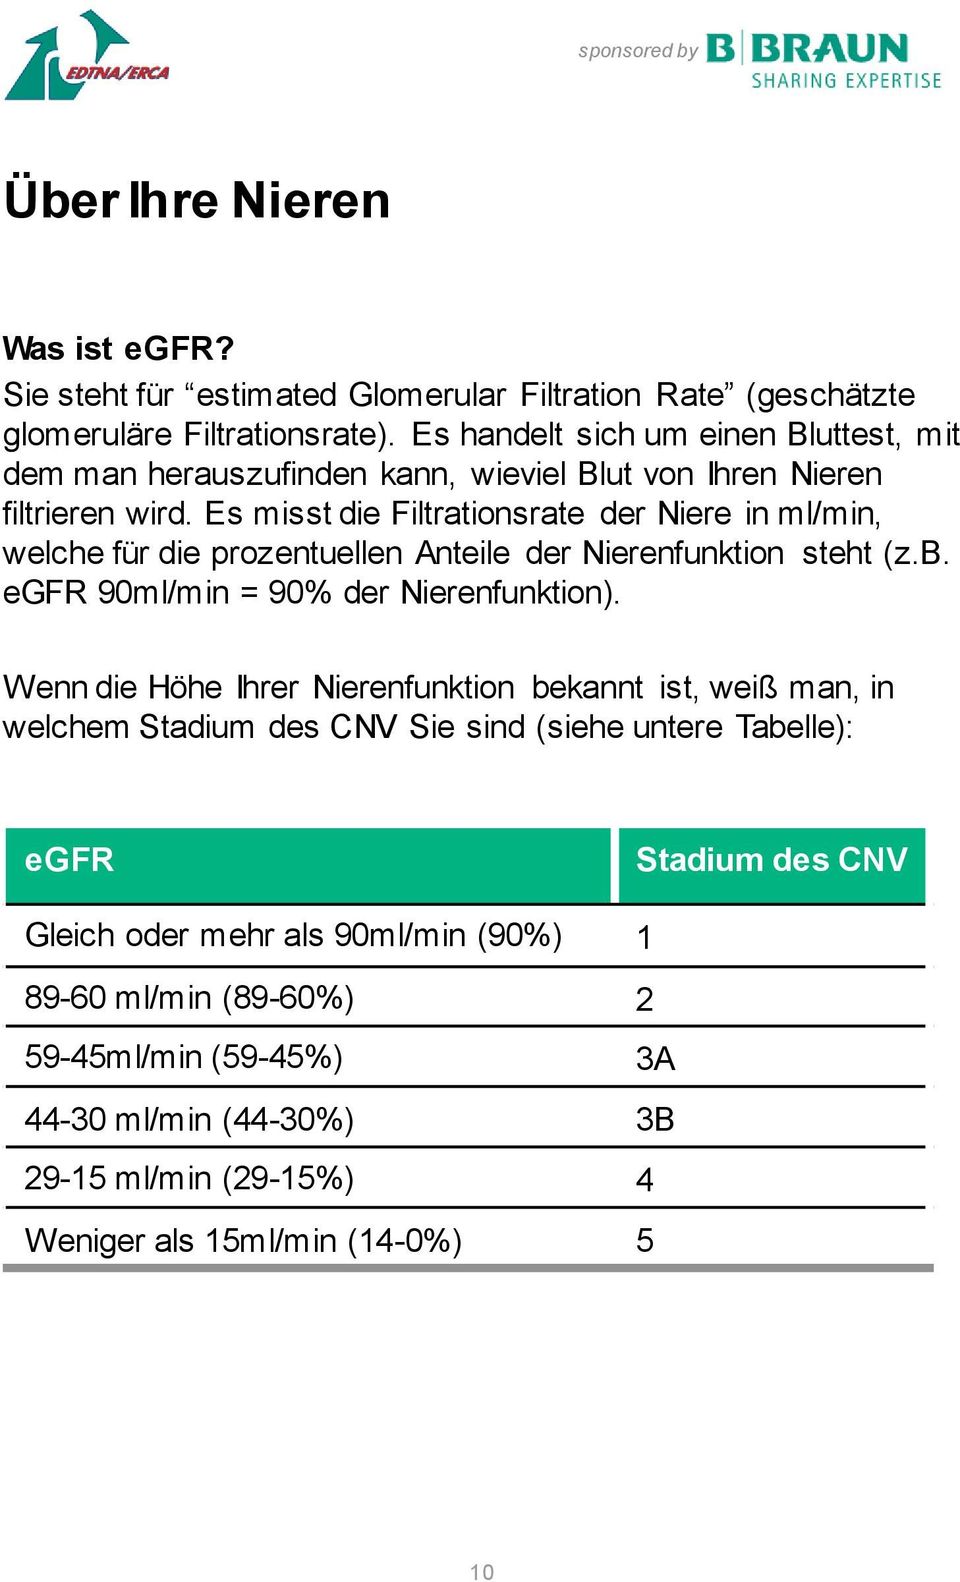 Es misst die Filtrationsrate der Niere in ml/min, welche für die prozentuellen Anteile der Nierenfunktion steht (z.b. egfr 90ml/min = 90% der Nierenfunktion).